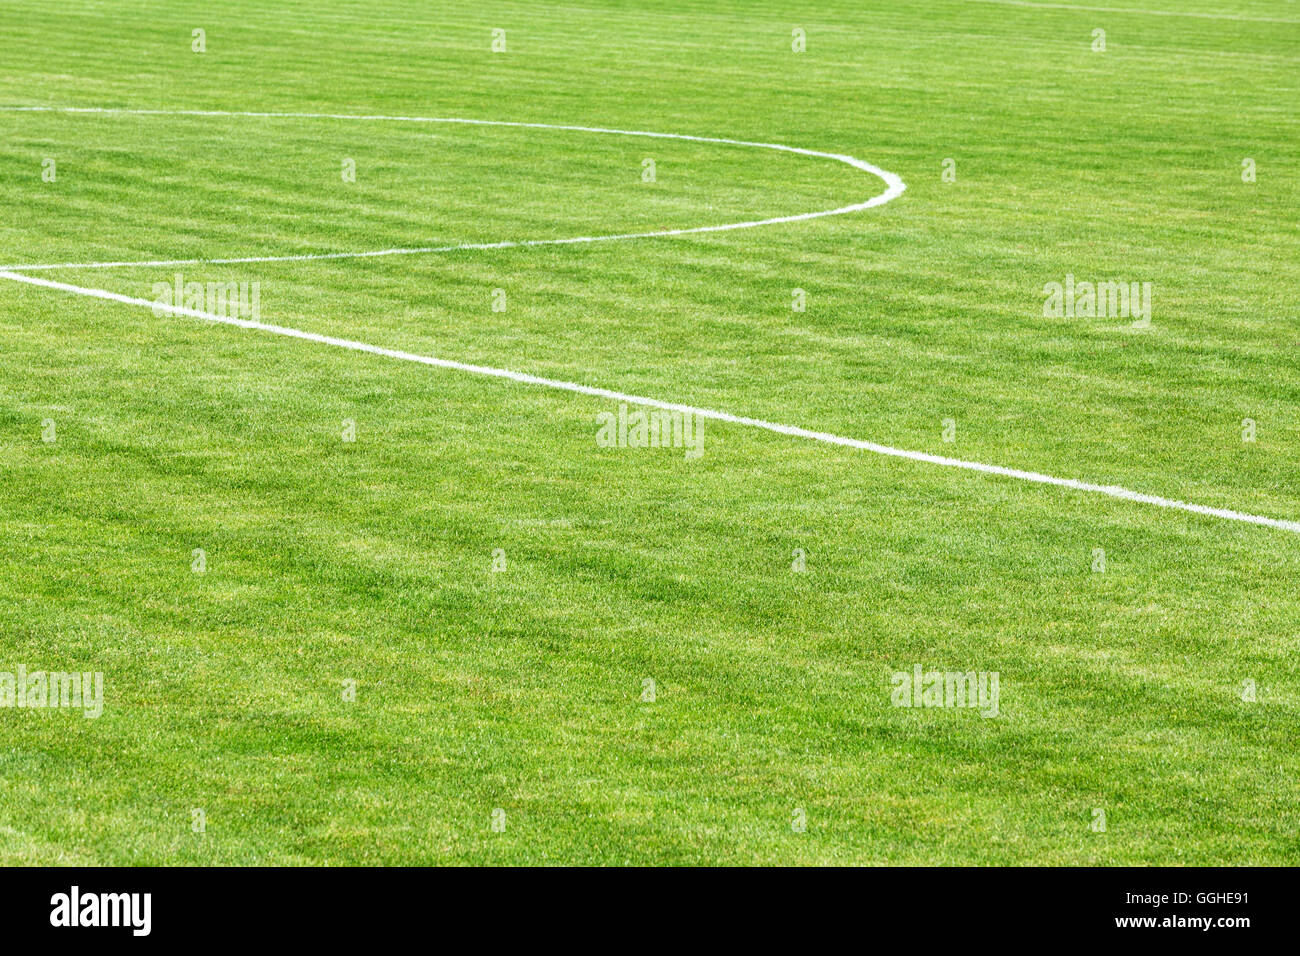 Fußballplatz mit Mittellinie Stockfoto